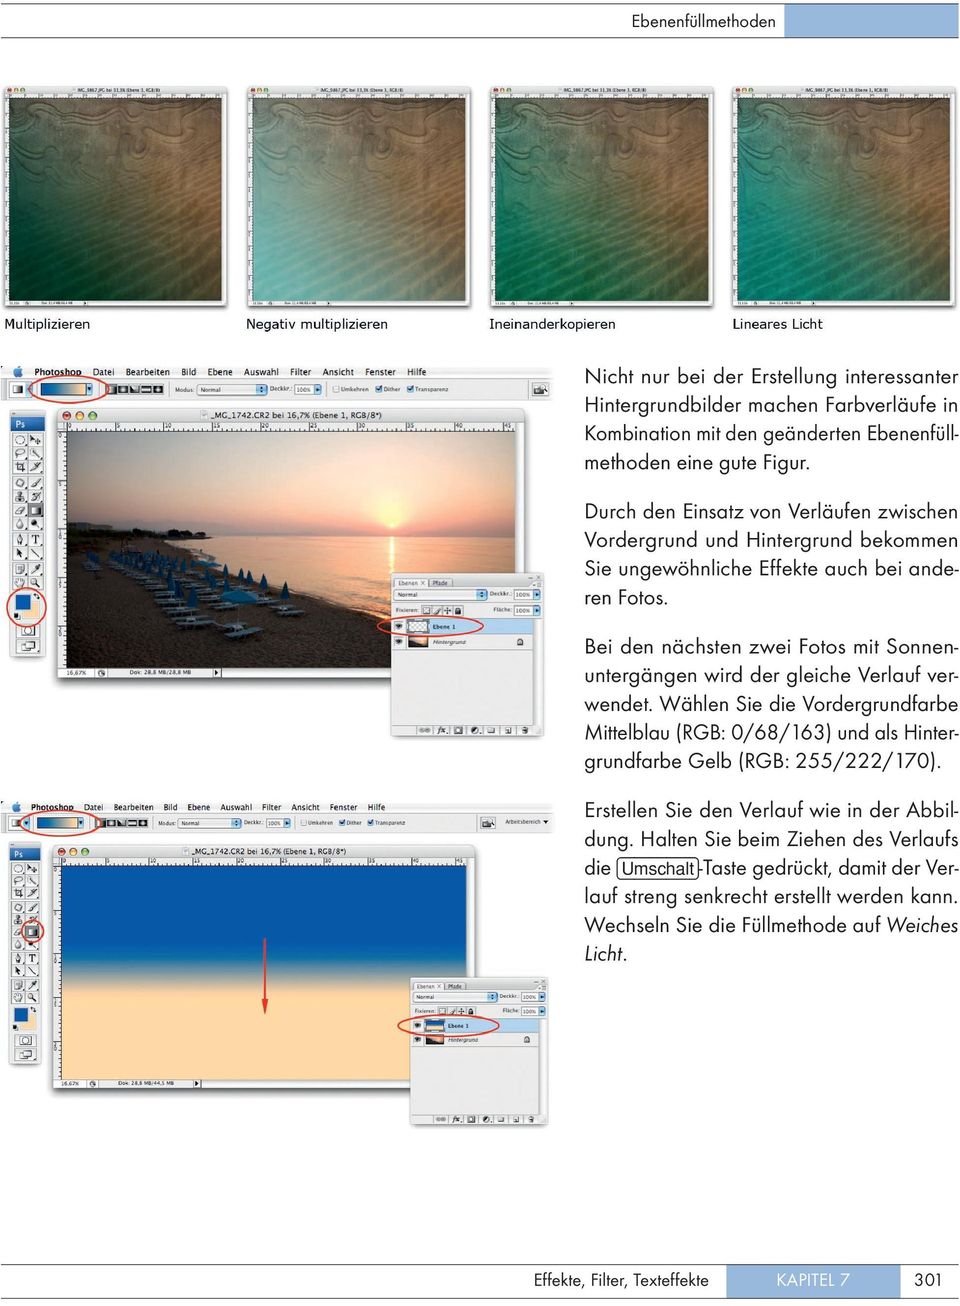 Bei den nächsten zwei Fotos mit Sonnenuntergängen wird der gleiche Verlauf verwendet.